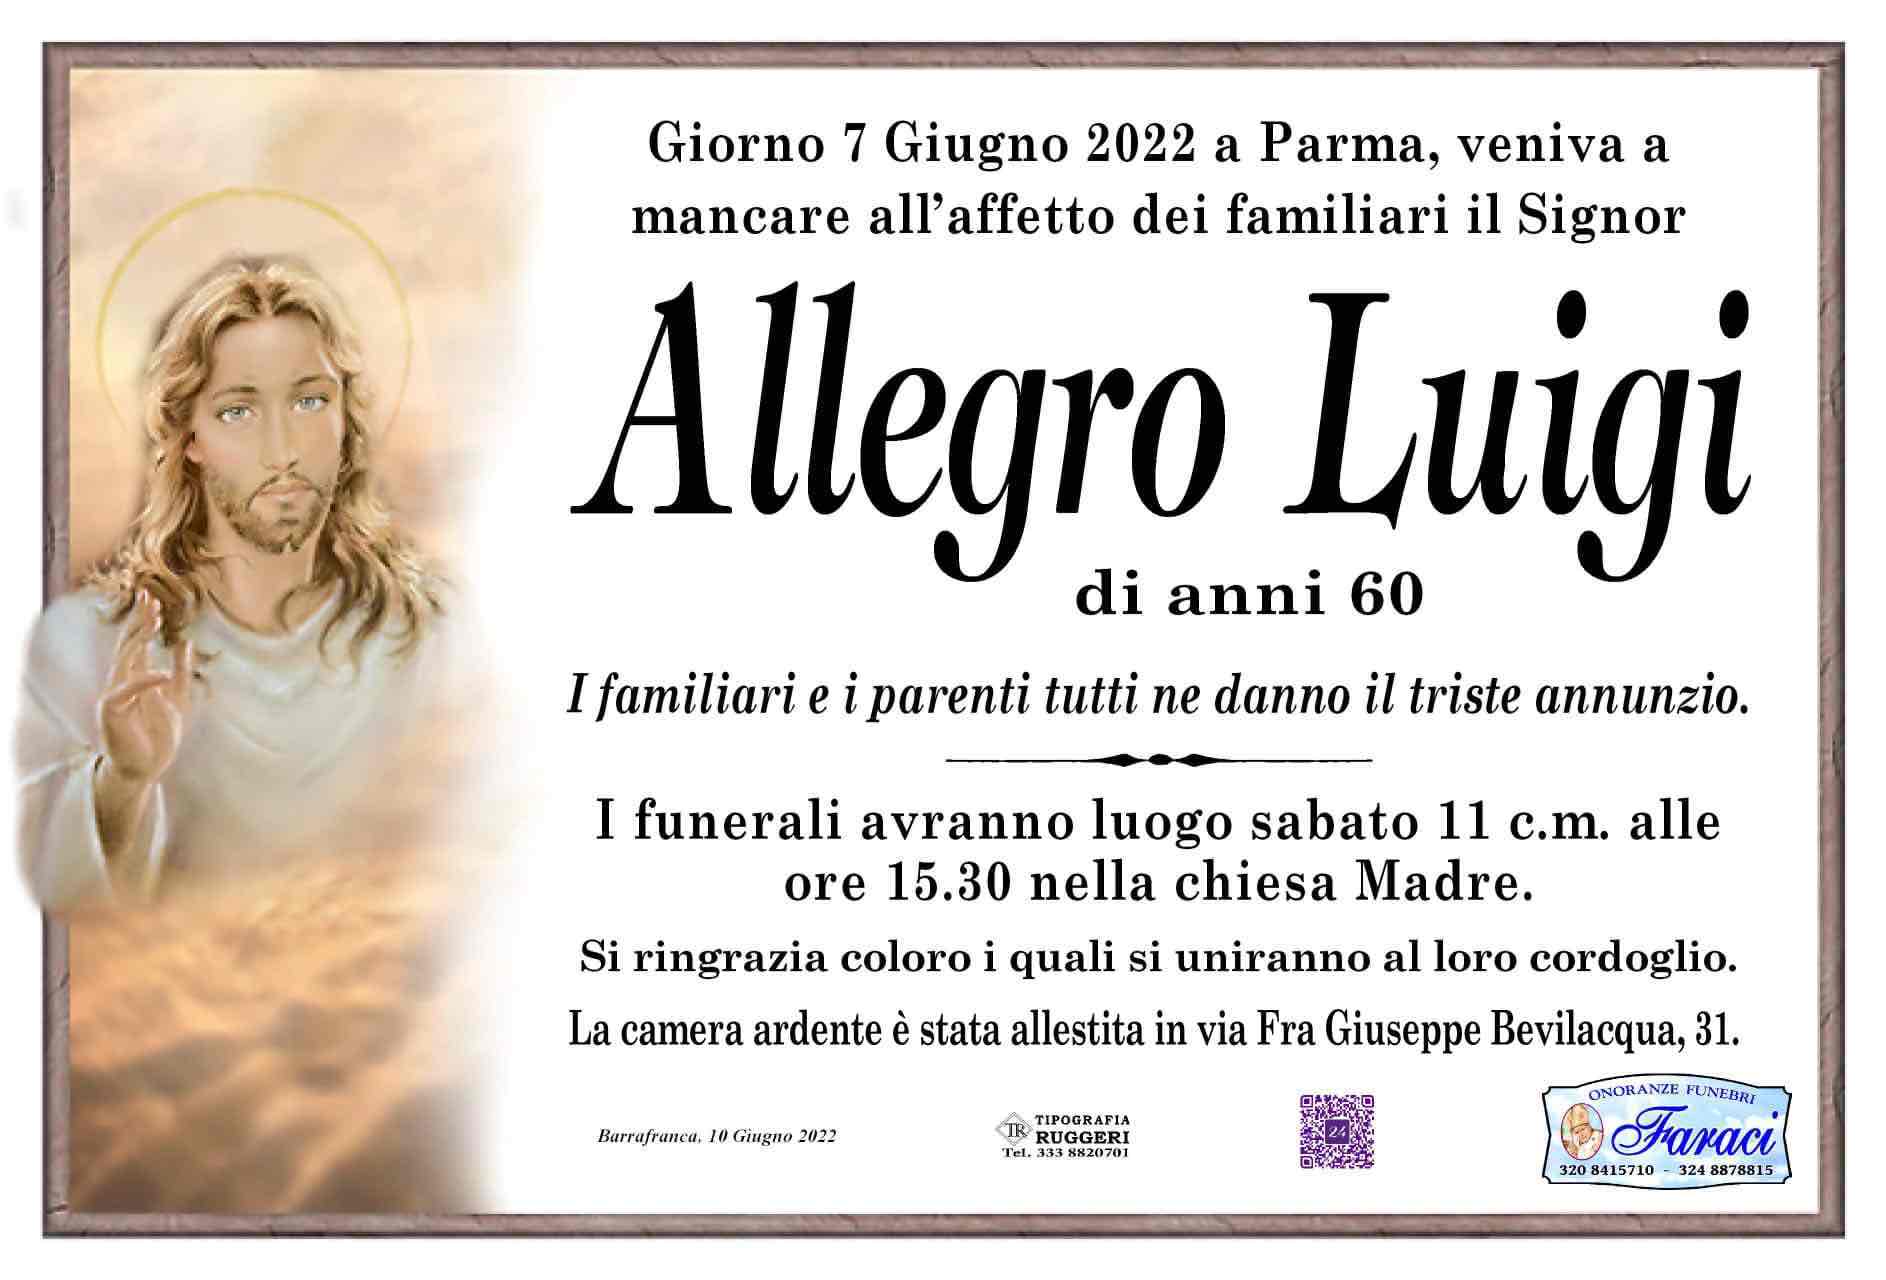 Luigi Allegro